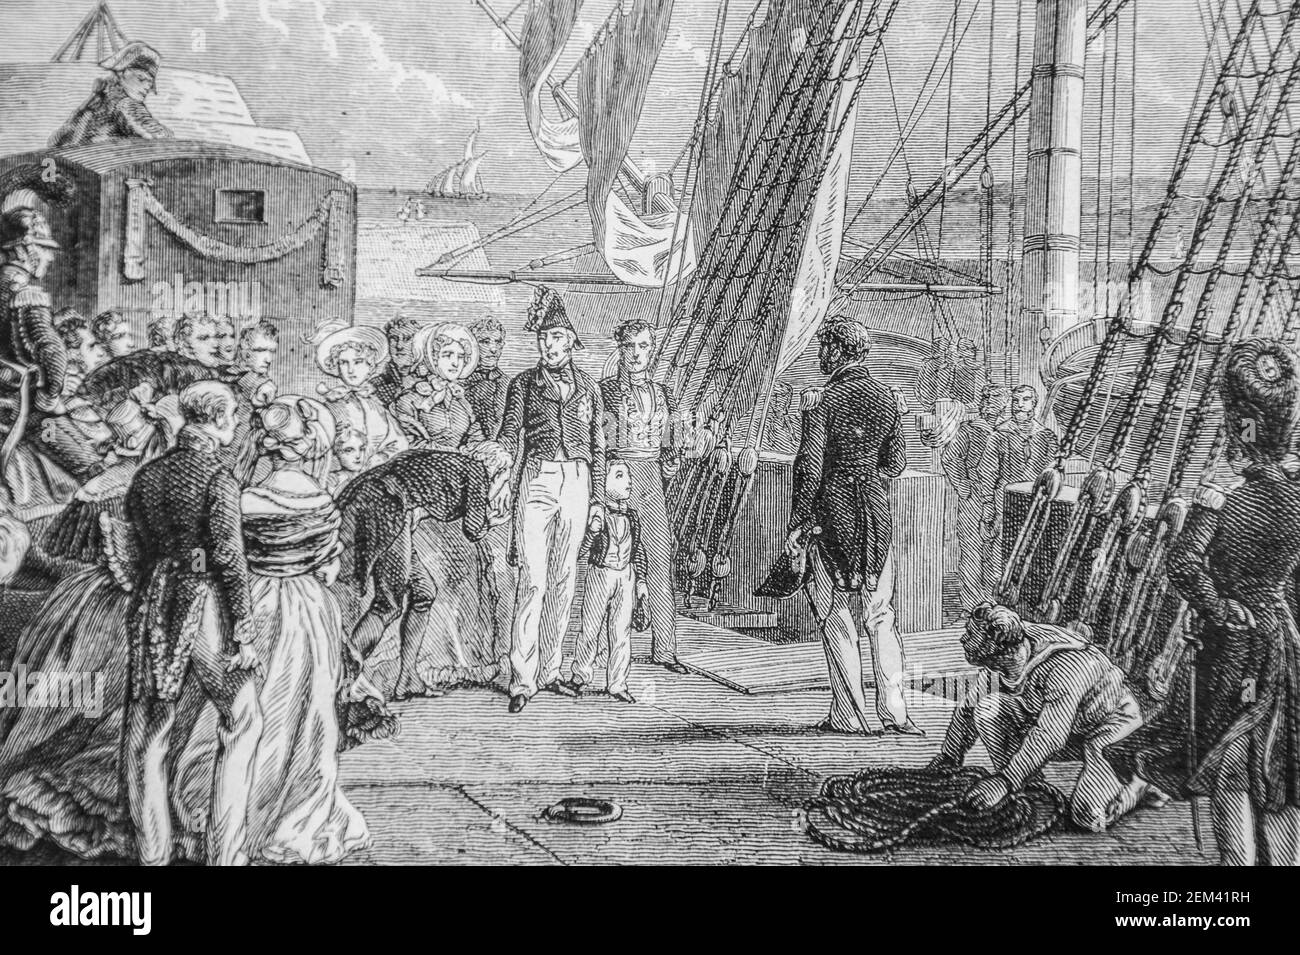 charle X s'embarque a cherbourg, 1804-1832 histoire de france par henri martin ,editeur furne 1880 Stock Photo